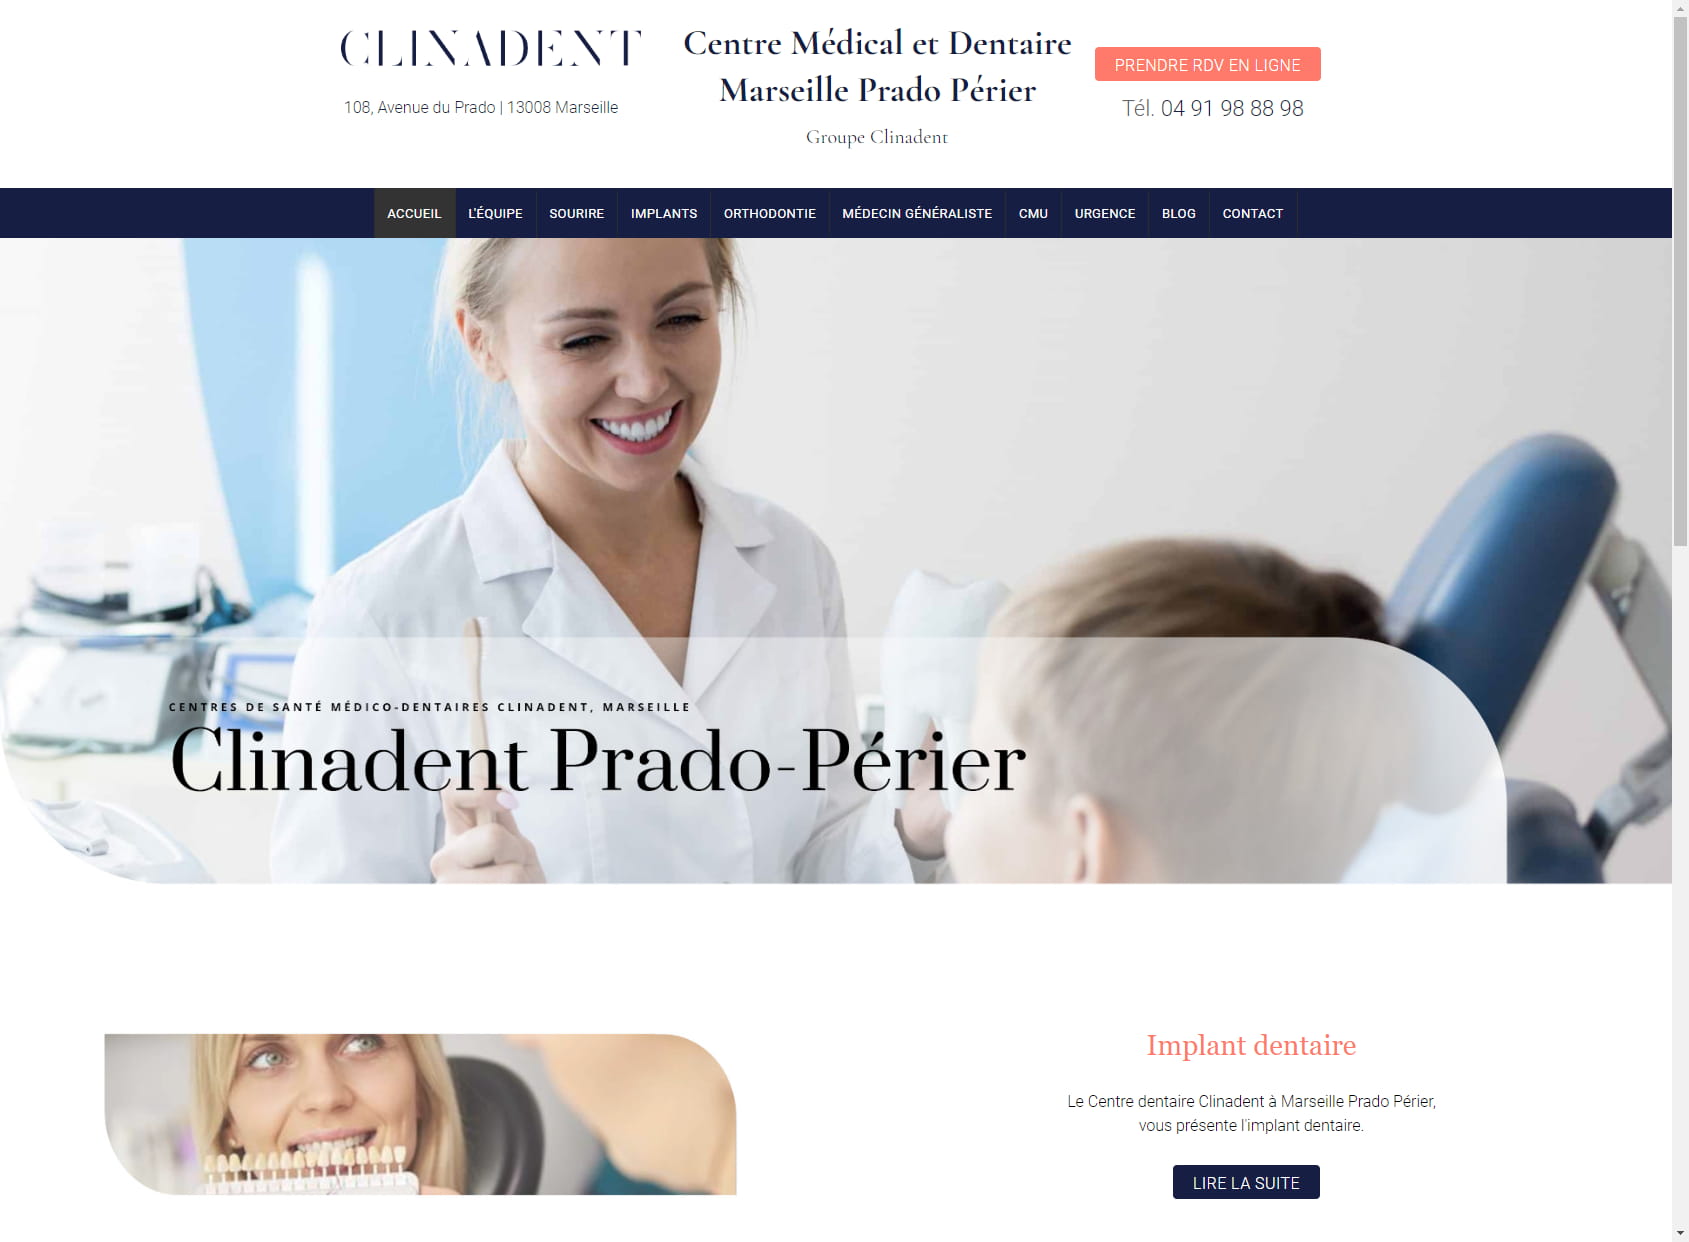 Clinadent - Centre Médico-Dentaire Marseille 8, Prado-Périer